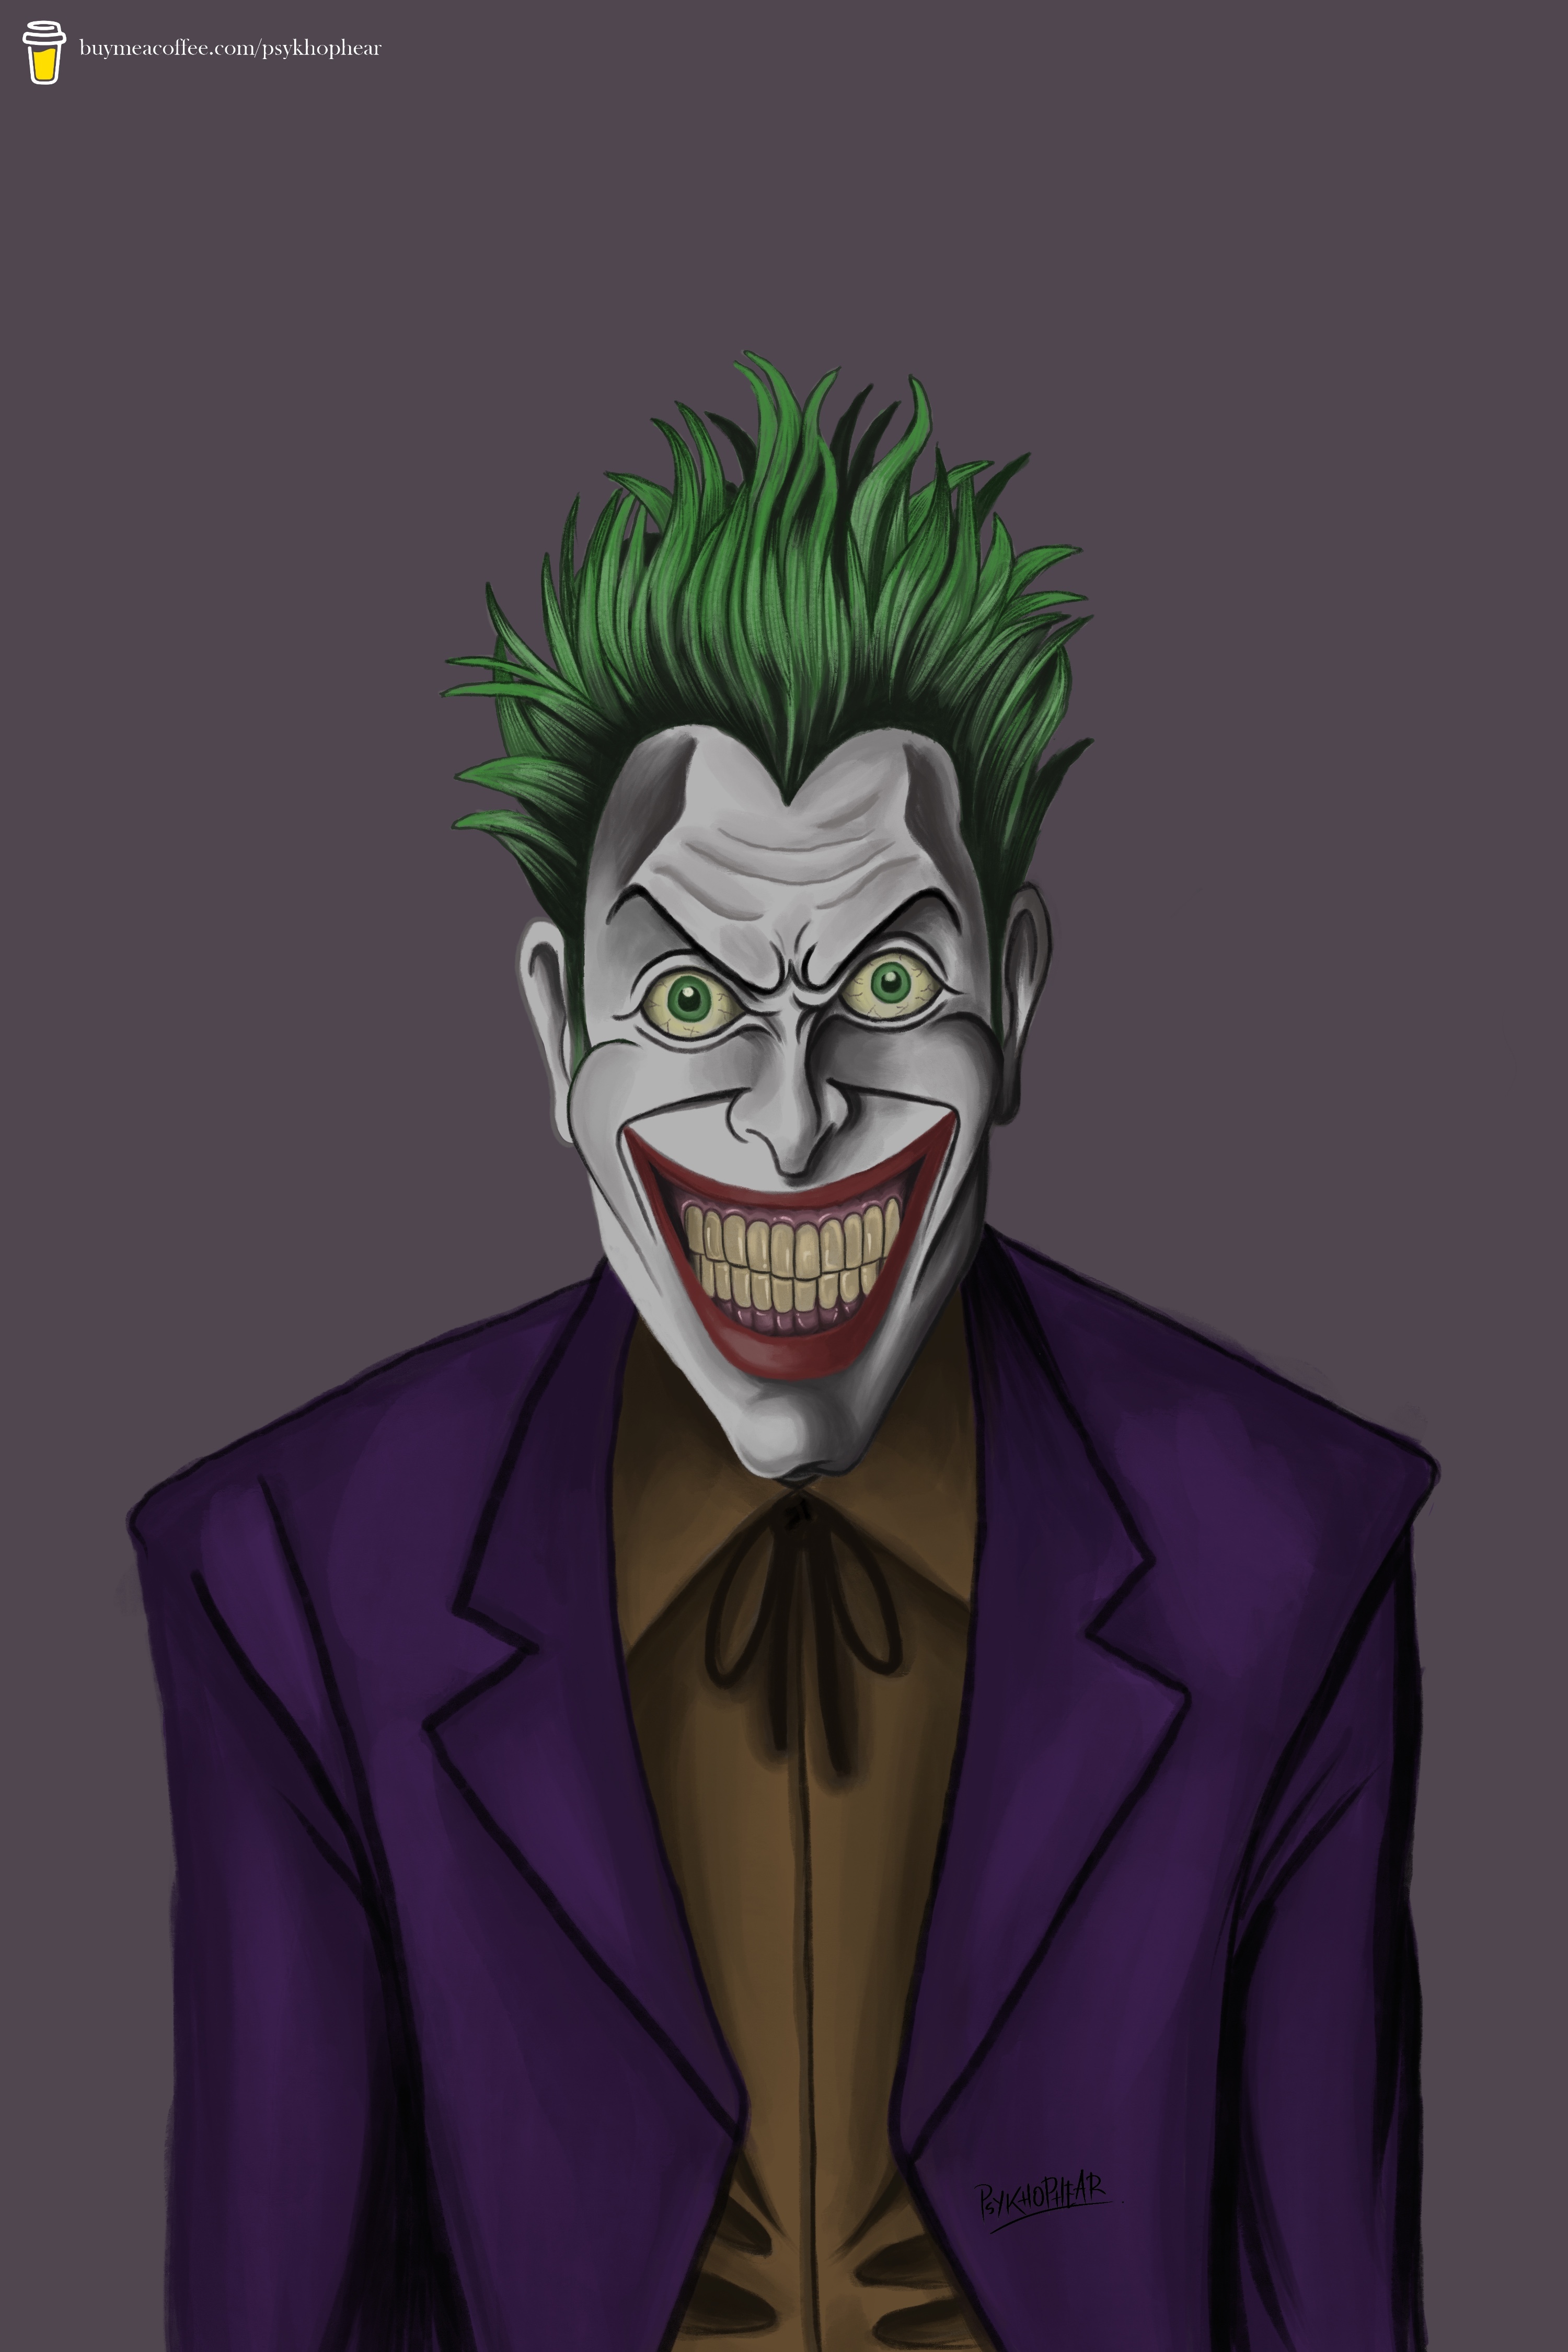 The Joker — Psykhophear